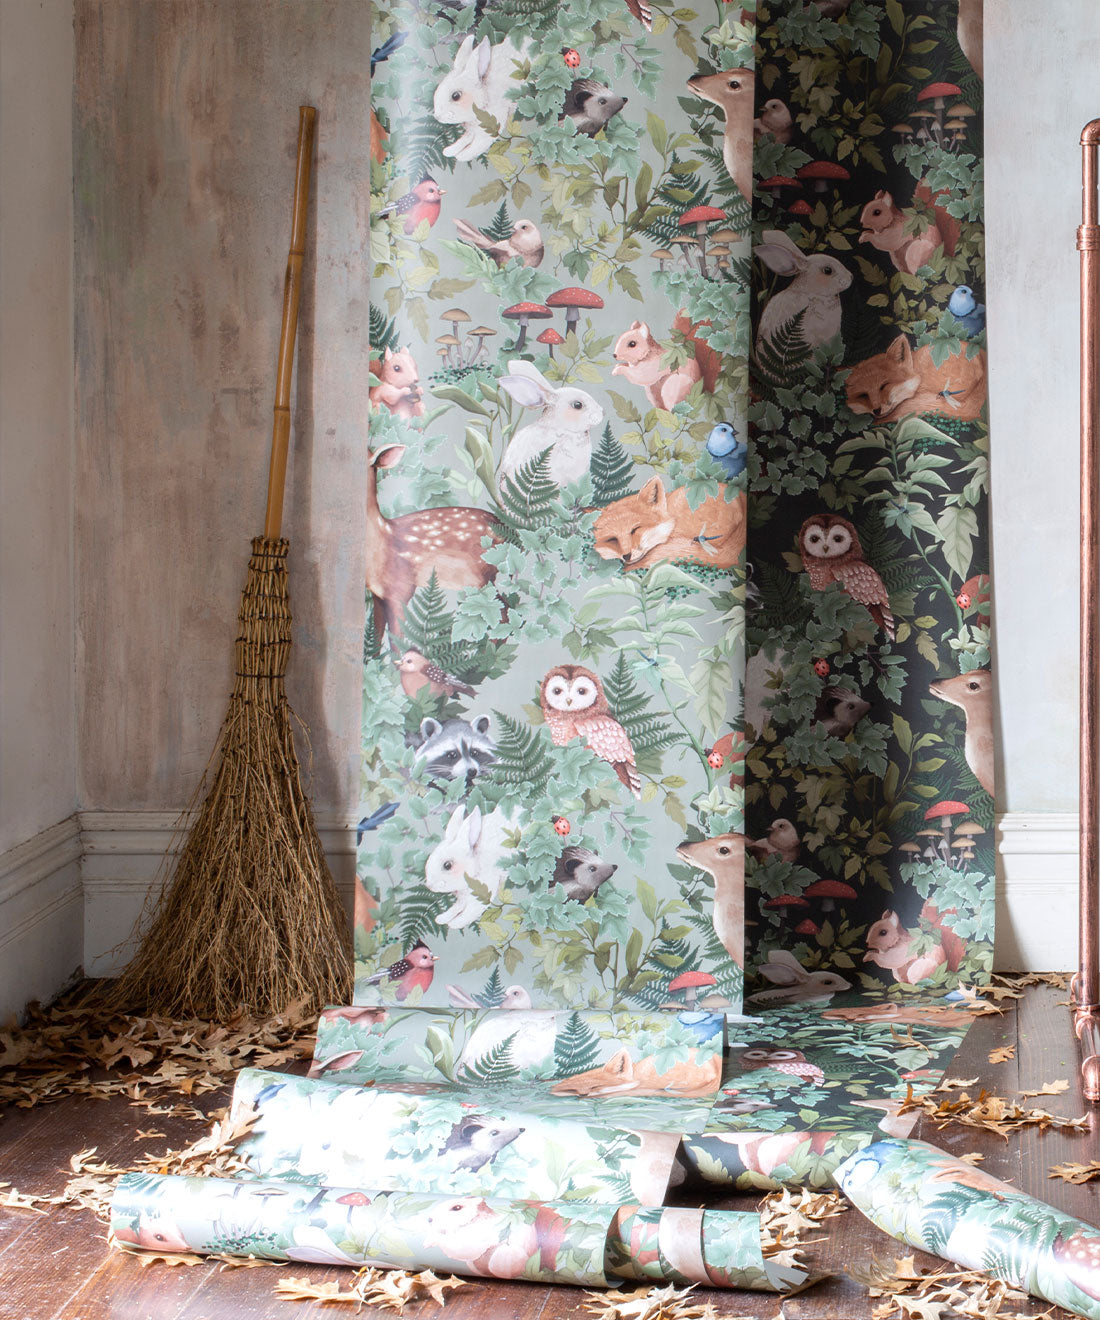 Nursery Wallpaper - In the Woods by Fleur Harris - Dusty Green